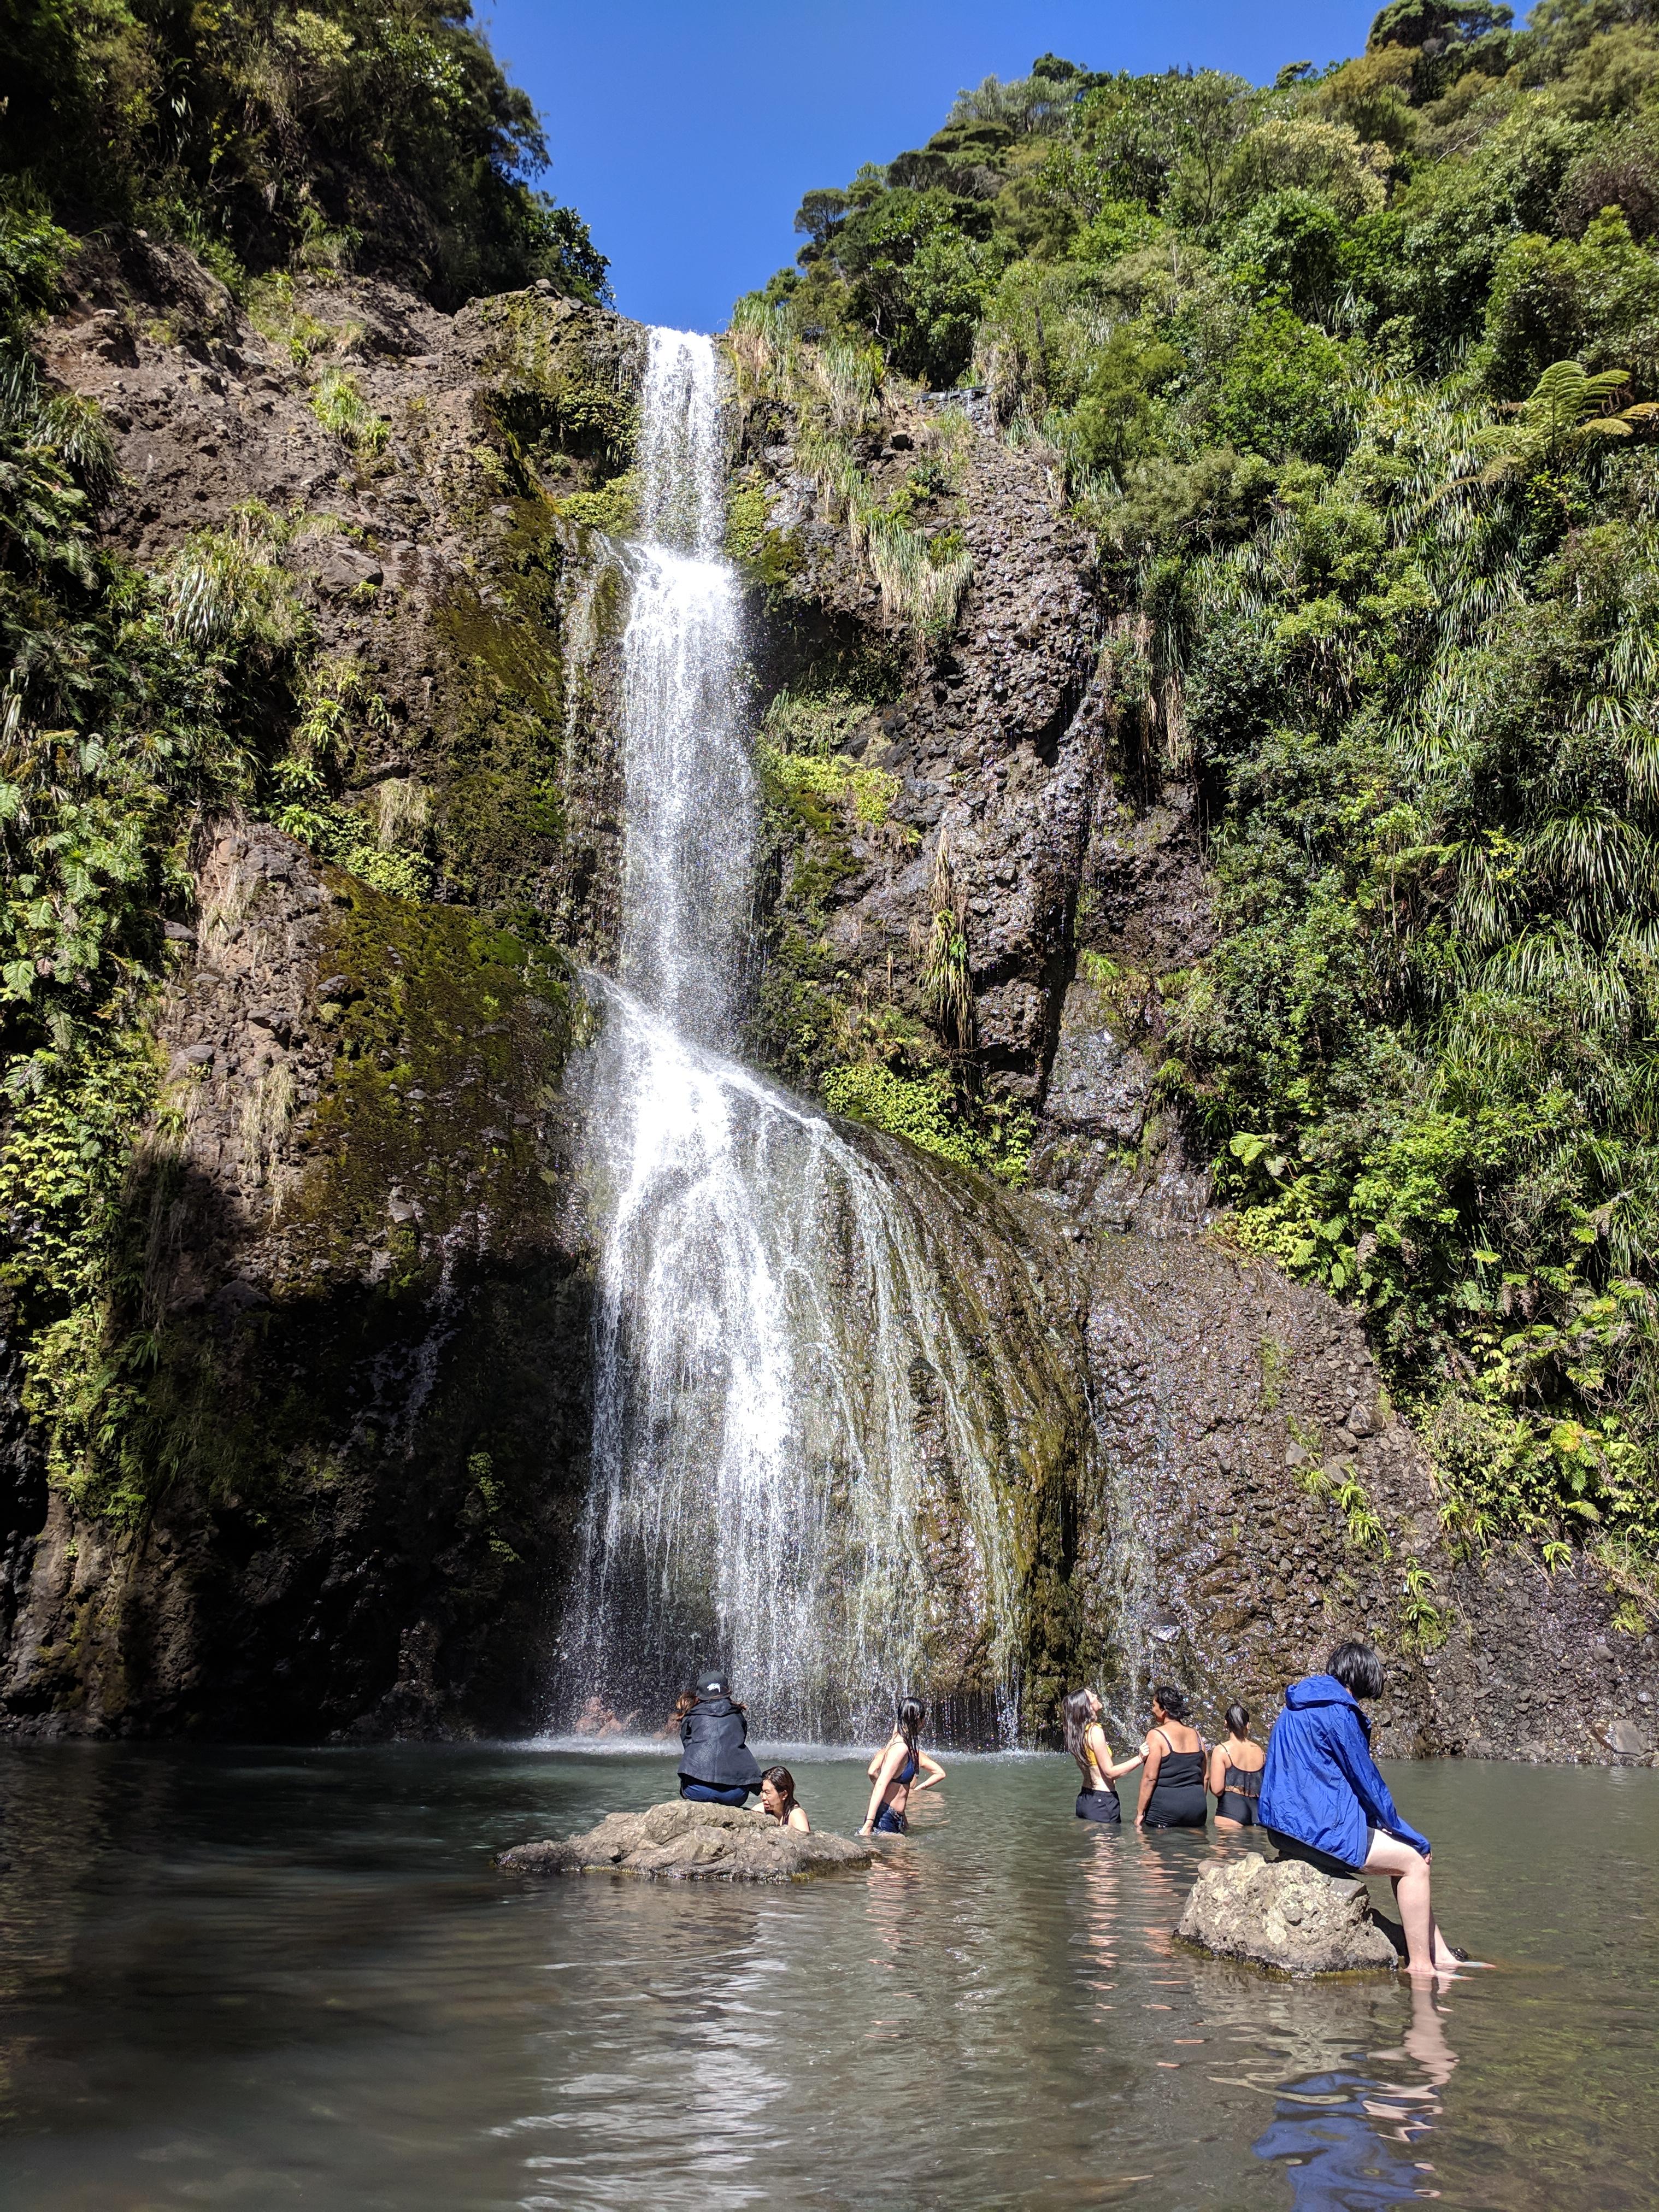 People swimming at the base of Kitekite falls